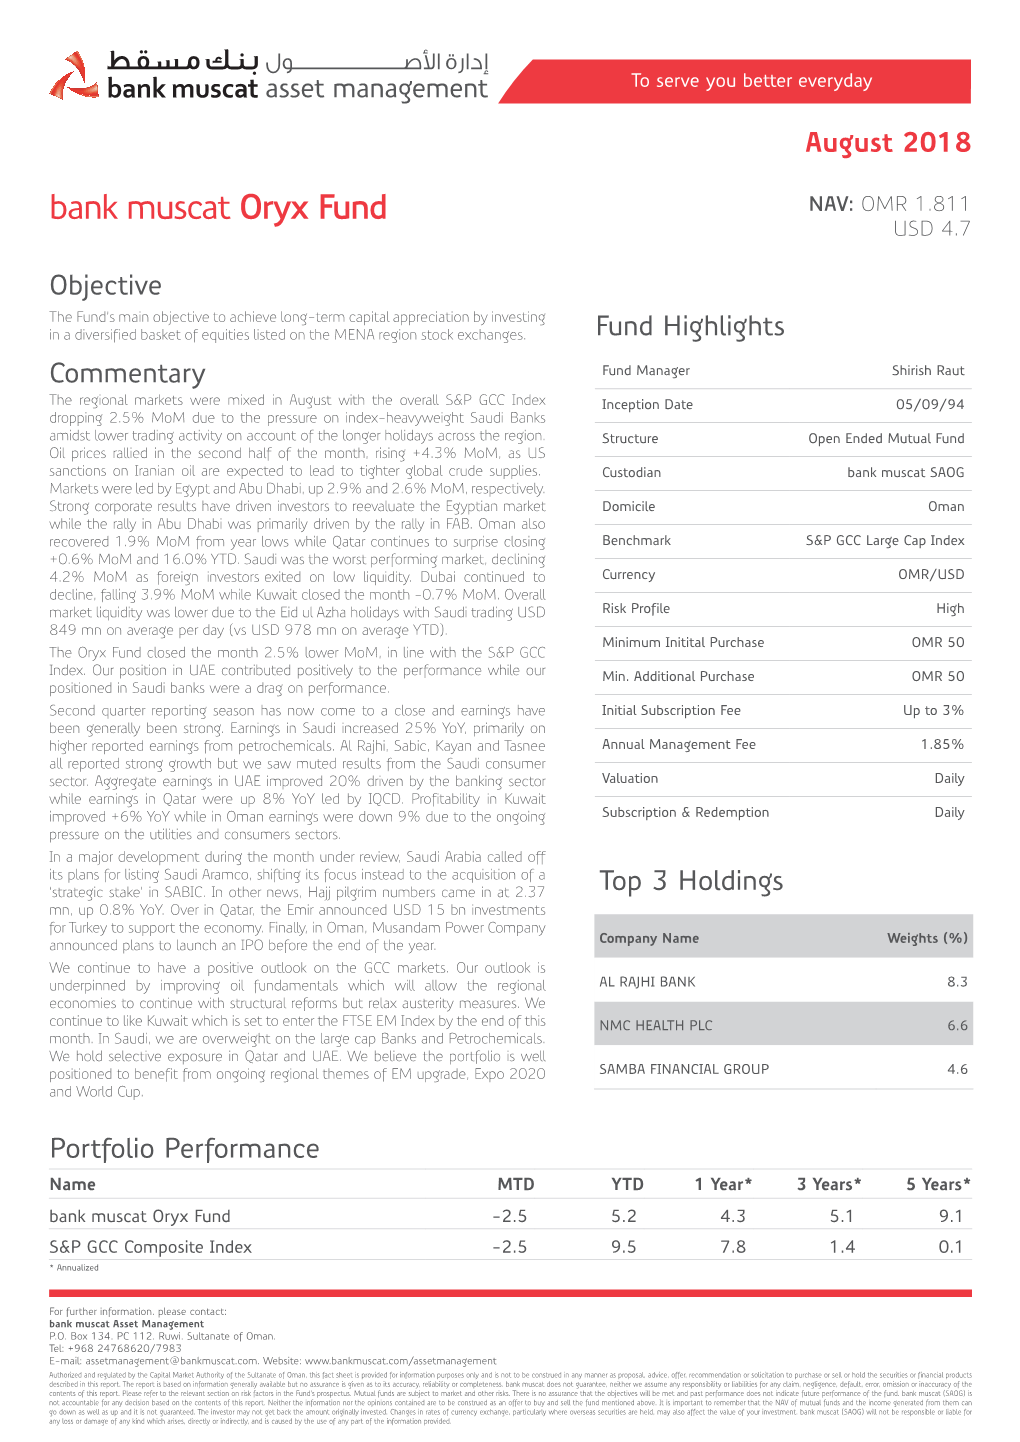 Bank Muscat Oryx Fund NAV: OMR 1.811 USD 4.7